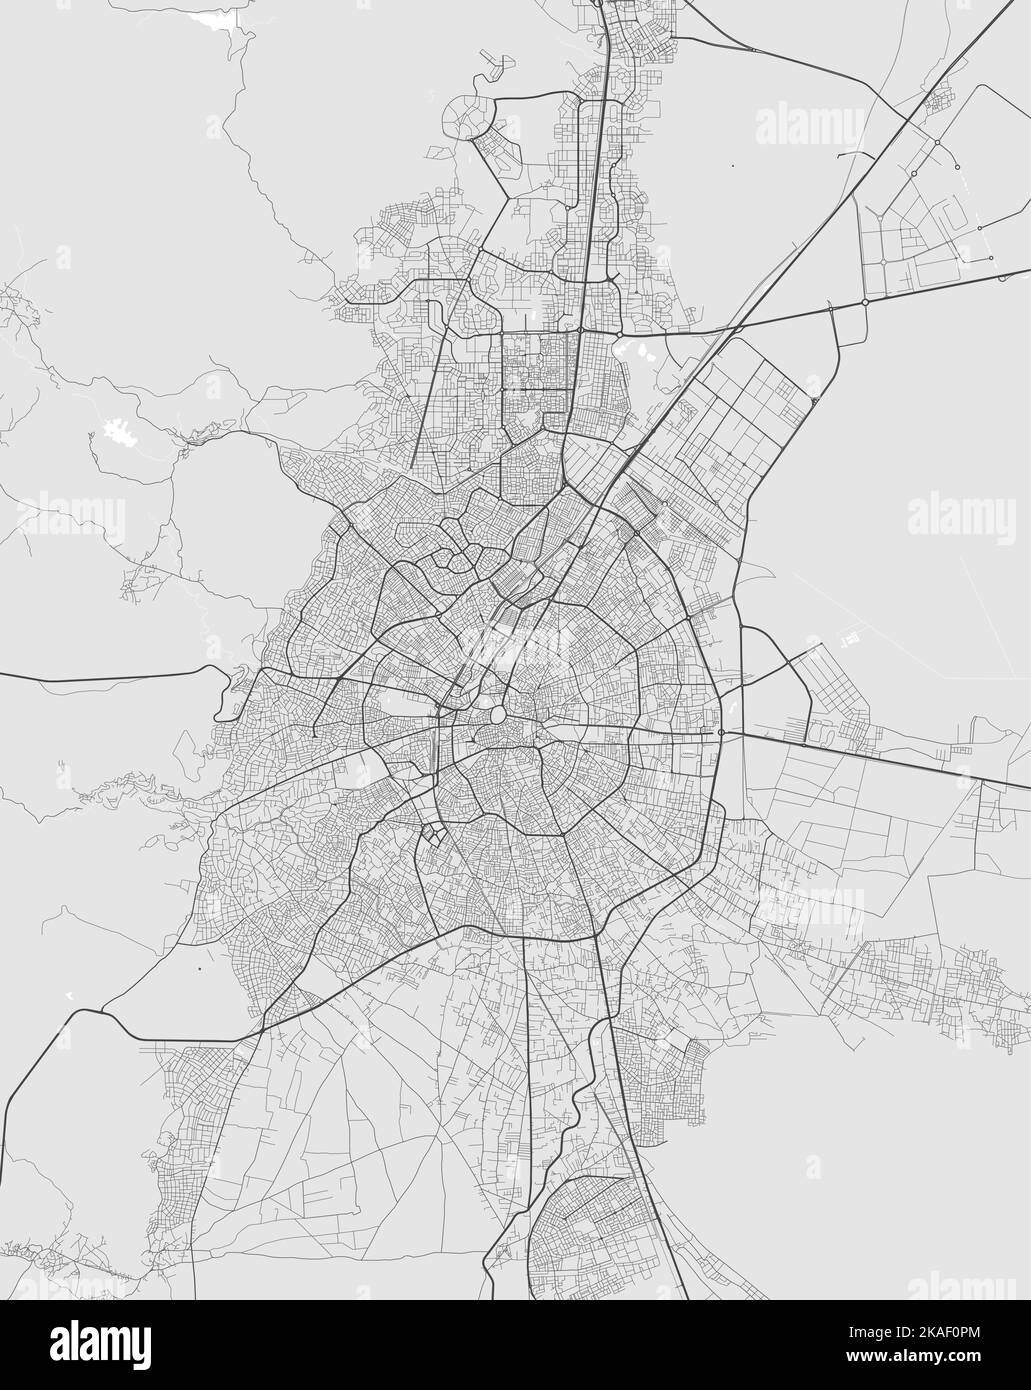 Mapa de Konya. Mapa detallado del área administrativa de la ciudad de Konya. Panorama del paisaje urbano. Ilustración vectorial libre de derechos de autor. Mapa de carreteras con autopistas, ríos. Ilustración del Vector